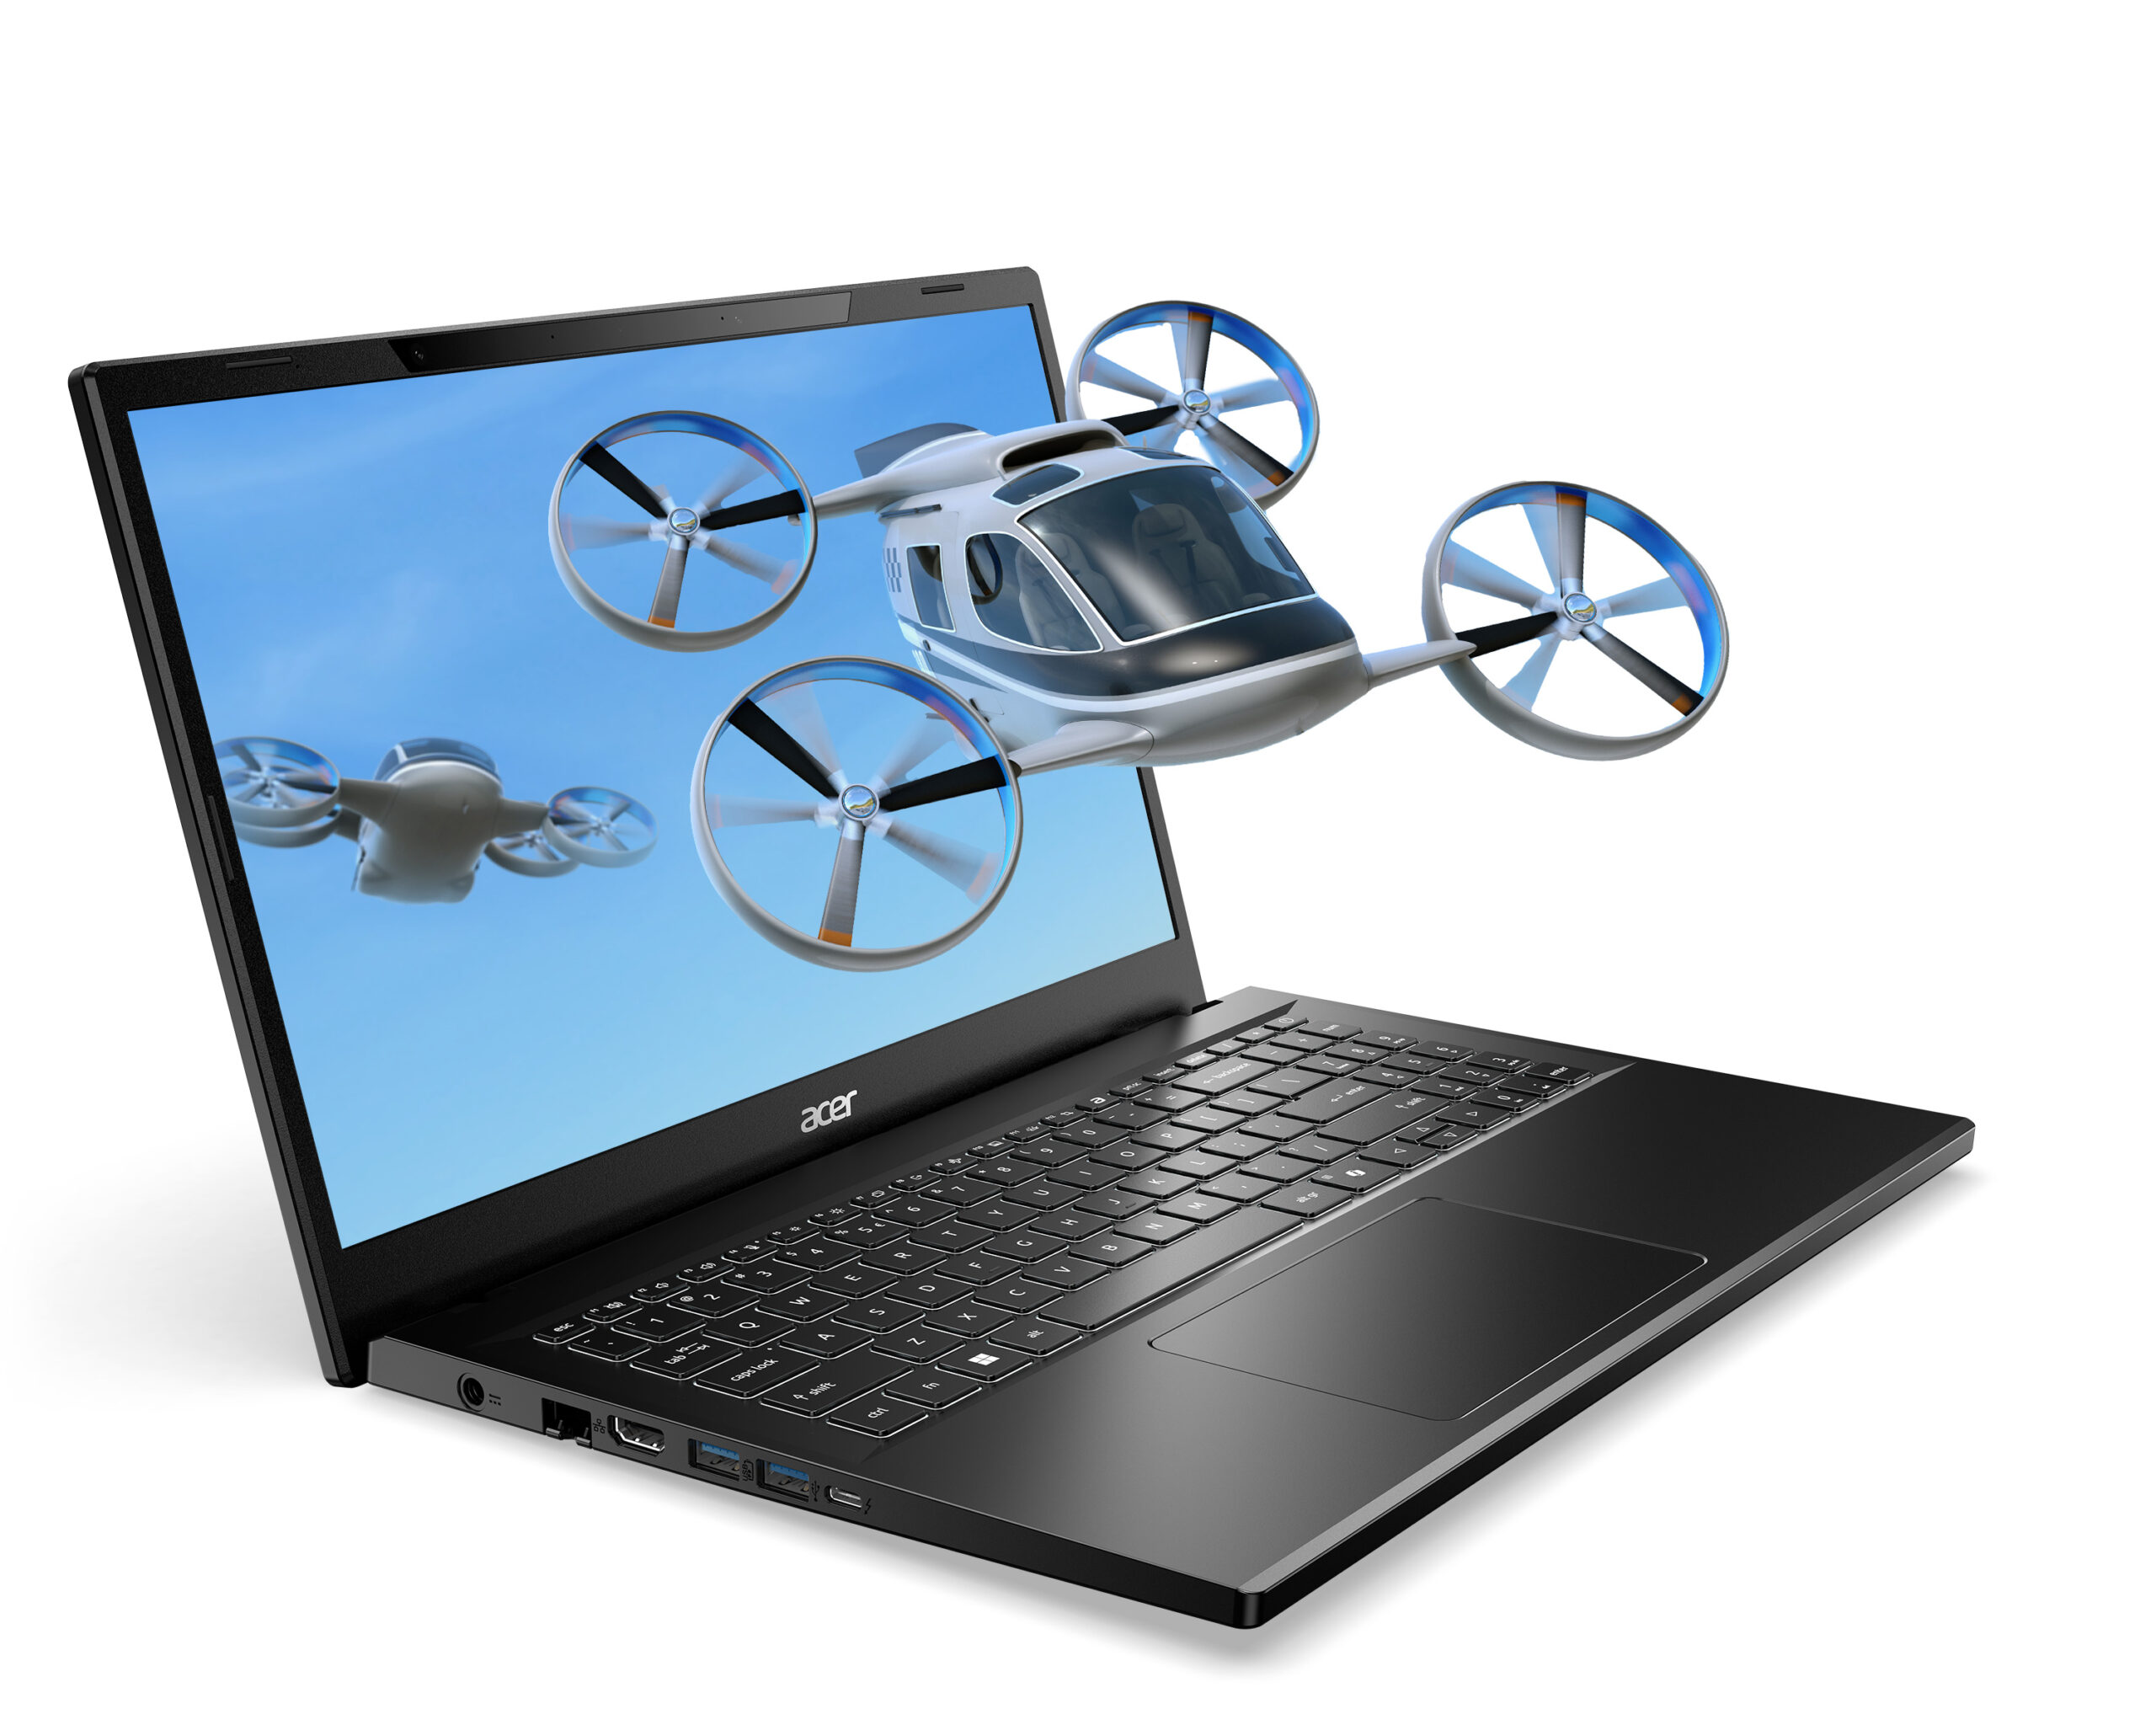 Acer доповнила асортимент стереоскопічних 3D-пристроїв SpatialLabs новим ноутбуком та ігровим монітором